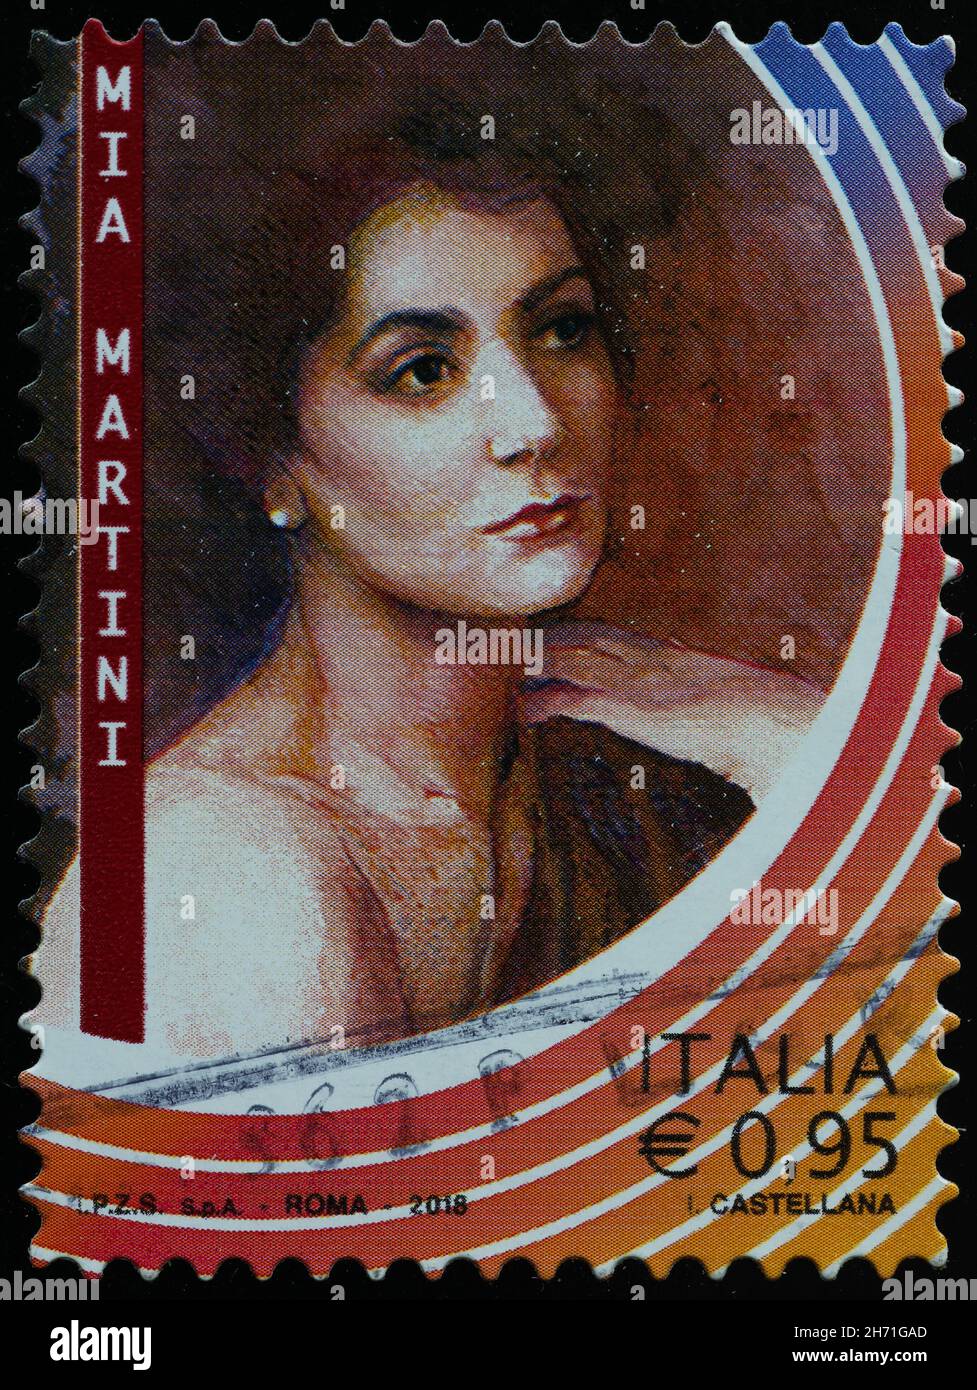 Mia Martini en sello postal italiano Foto de stock